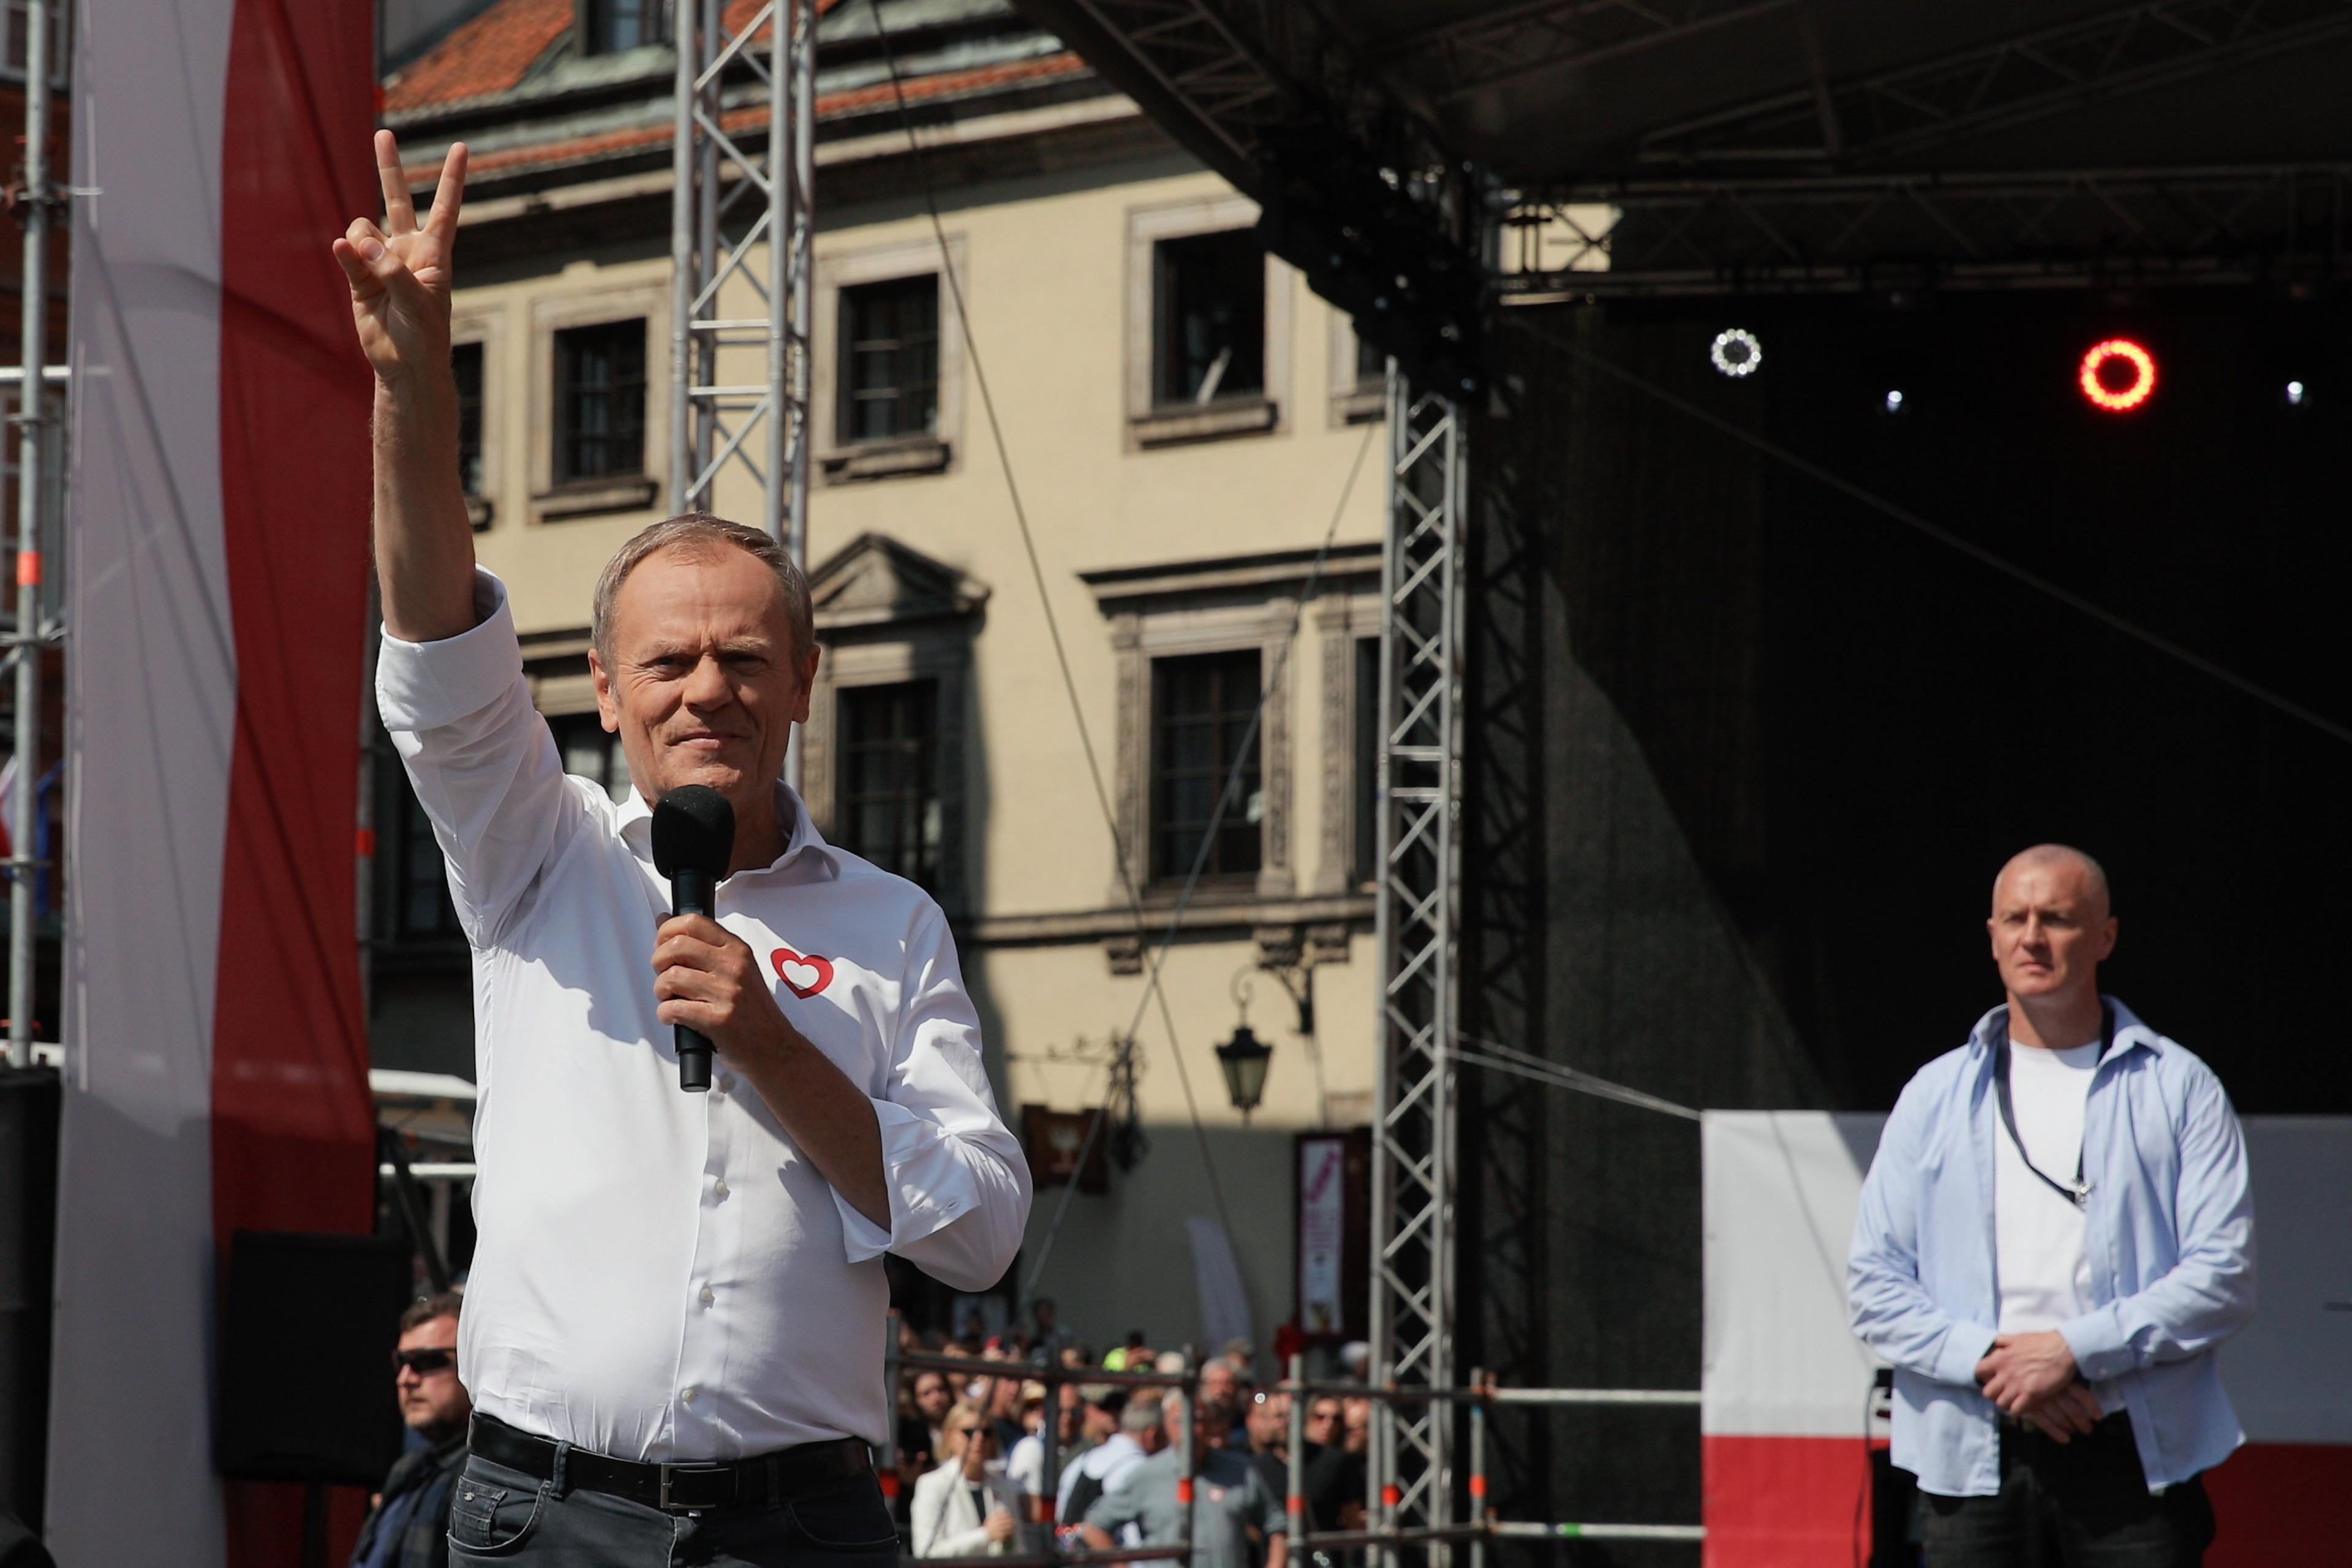 Mężczyzna stoi na scenie, w jednej dłoni trzyma mikrofon, drugą pokazuje znak zwycięstwa